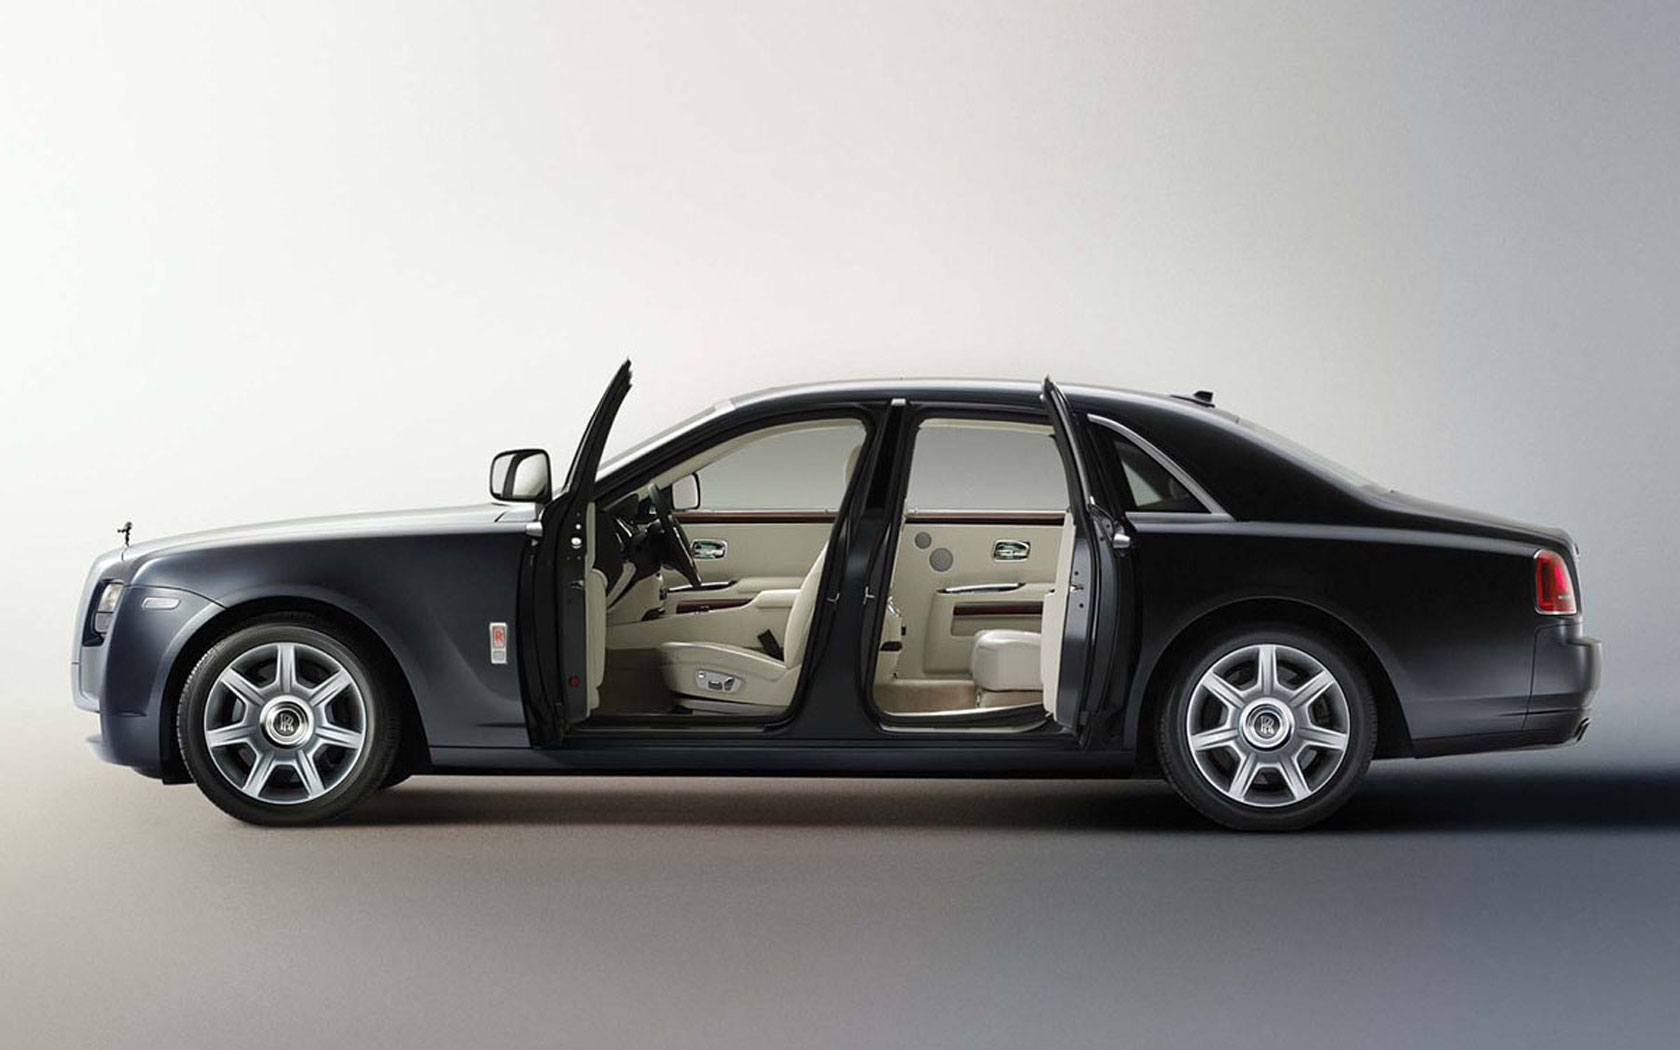  Rolls-Royce 200EX 